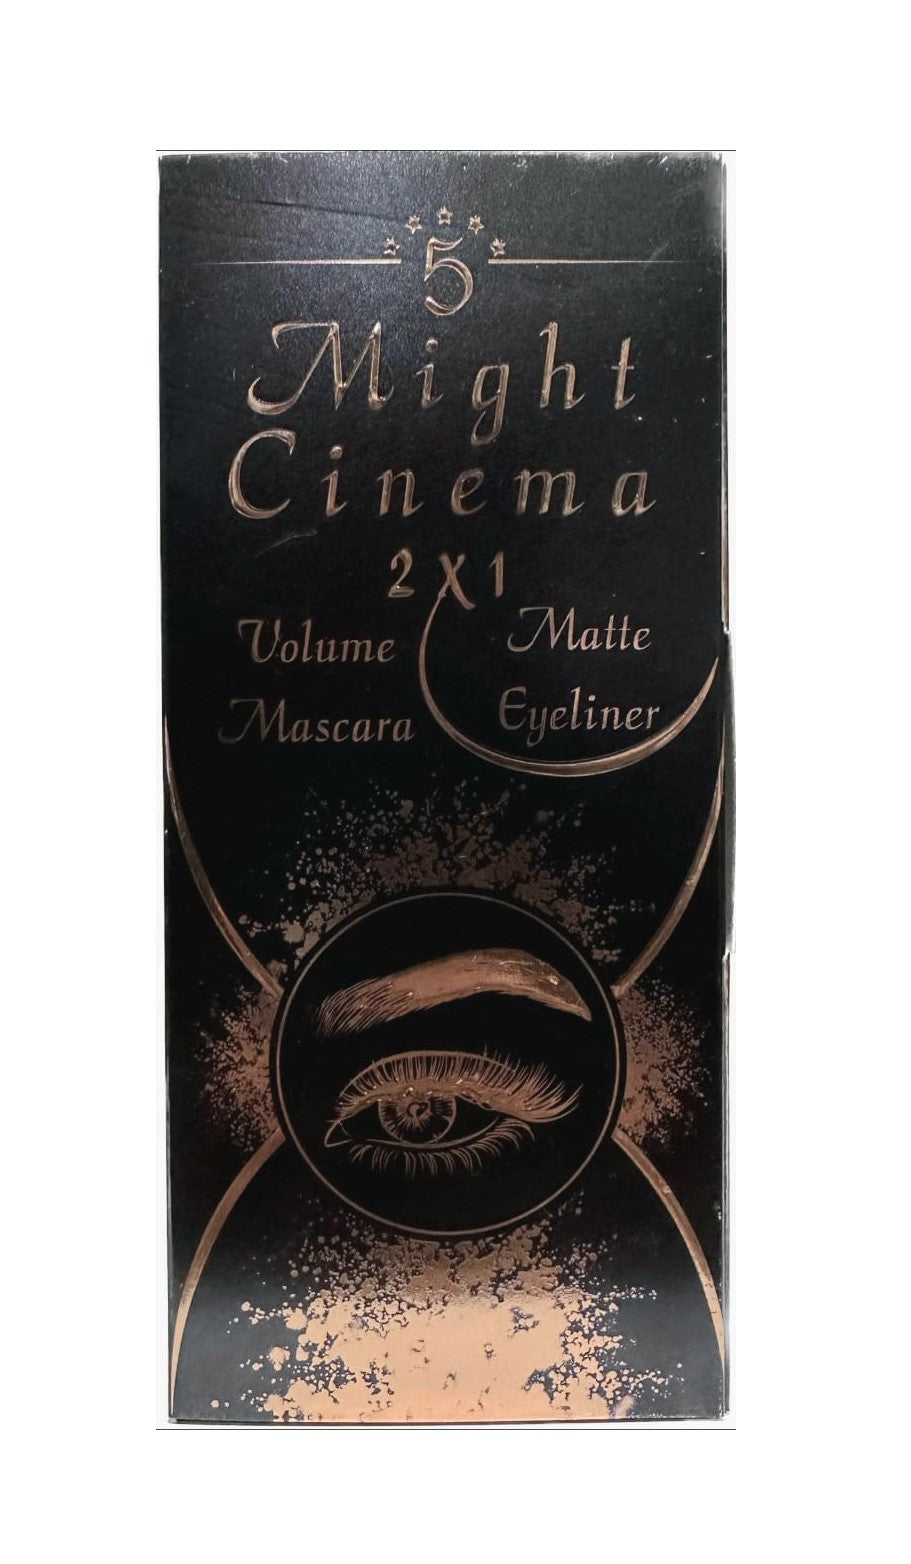 Might Cinema 2 x 1Volume Mascara & Matte Eyeliner